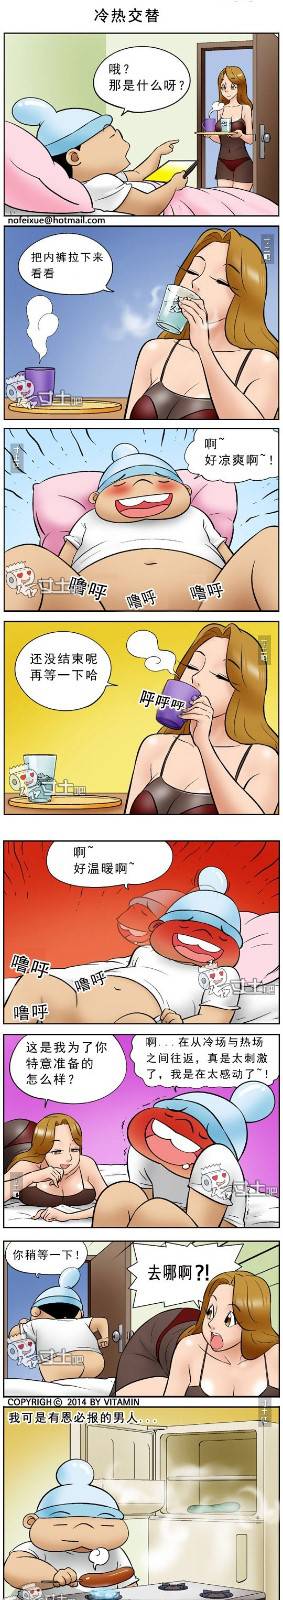 邪恶漫画爆笑囧图第358刊：冷热交替